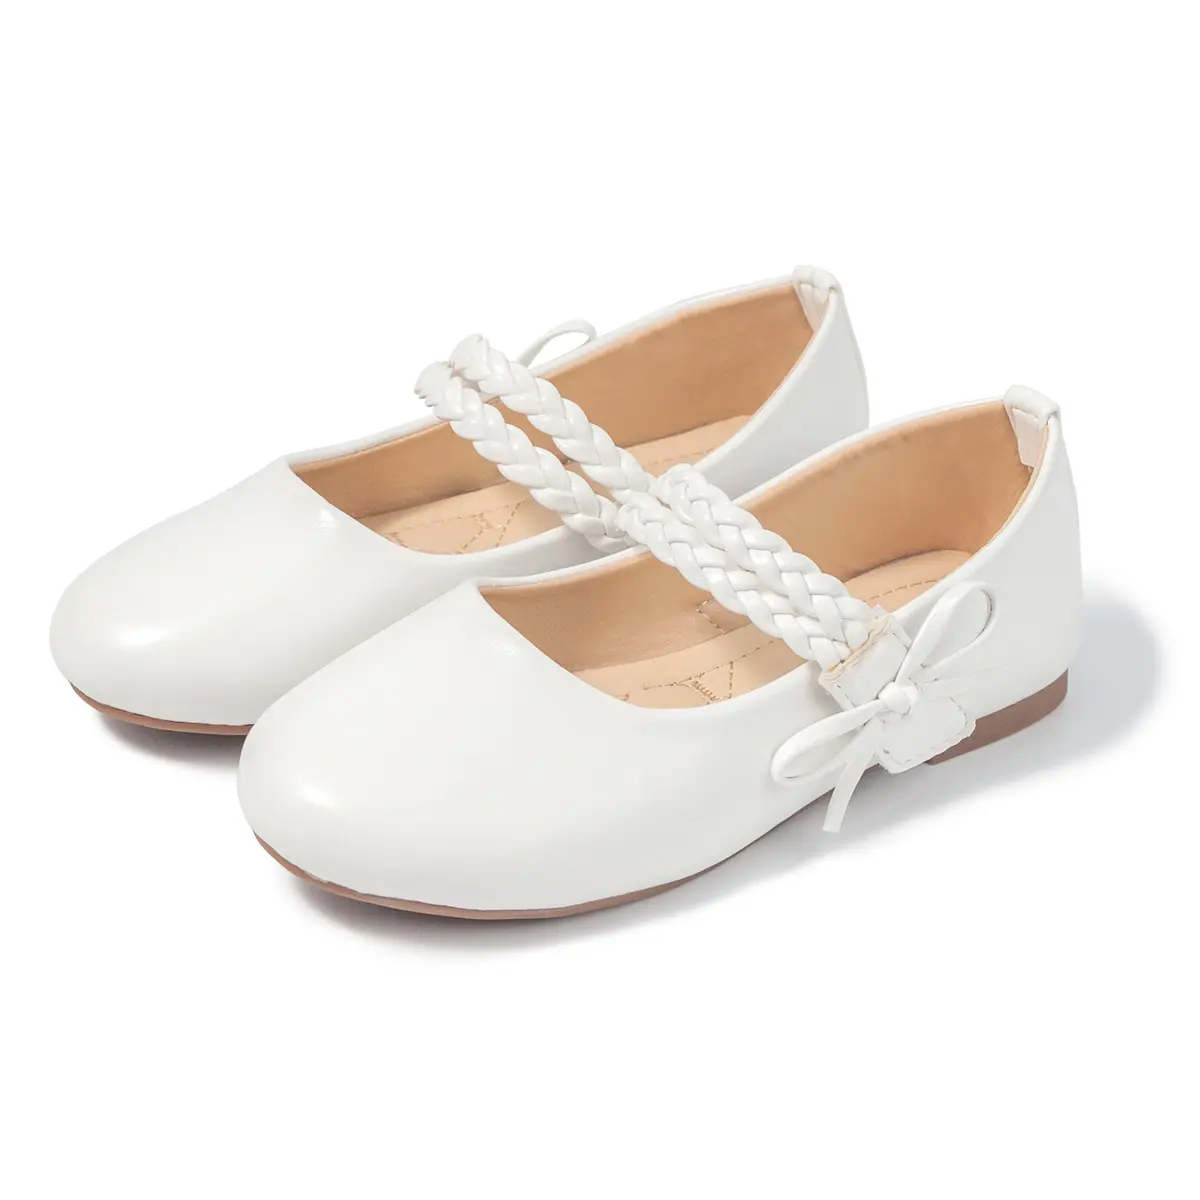 Escarpins en cuir blanc pour enfants, chaussures de ballerine avec pieds plats, motif floral, pour filles, nouvelle collection